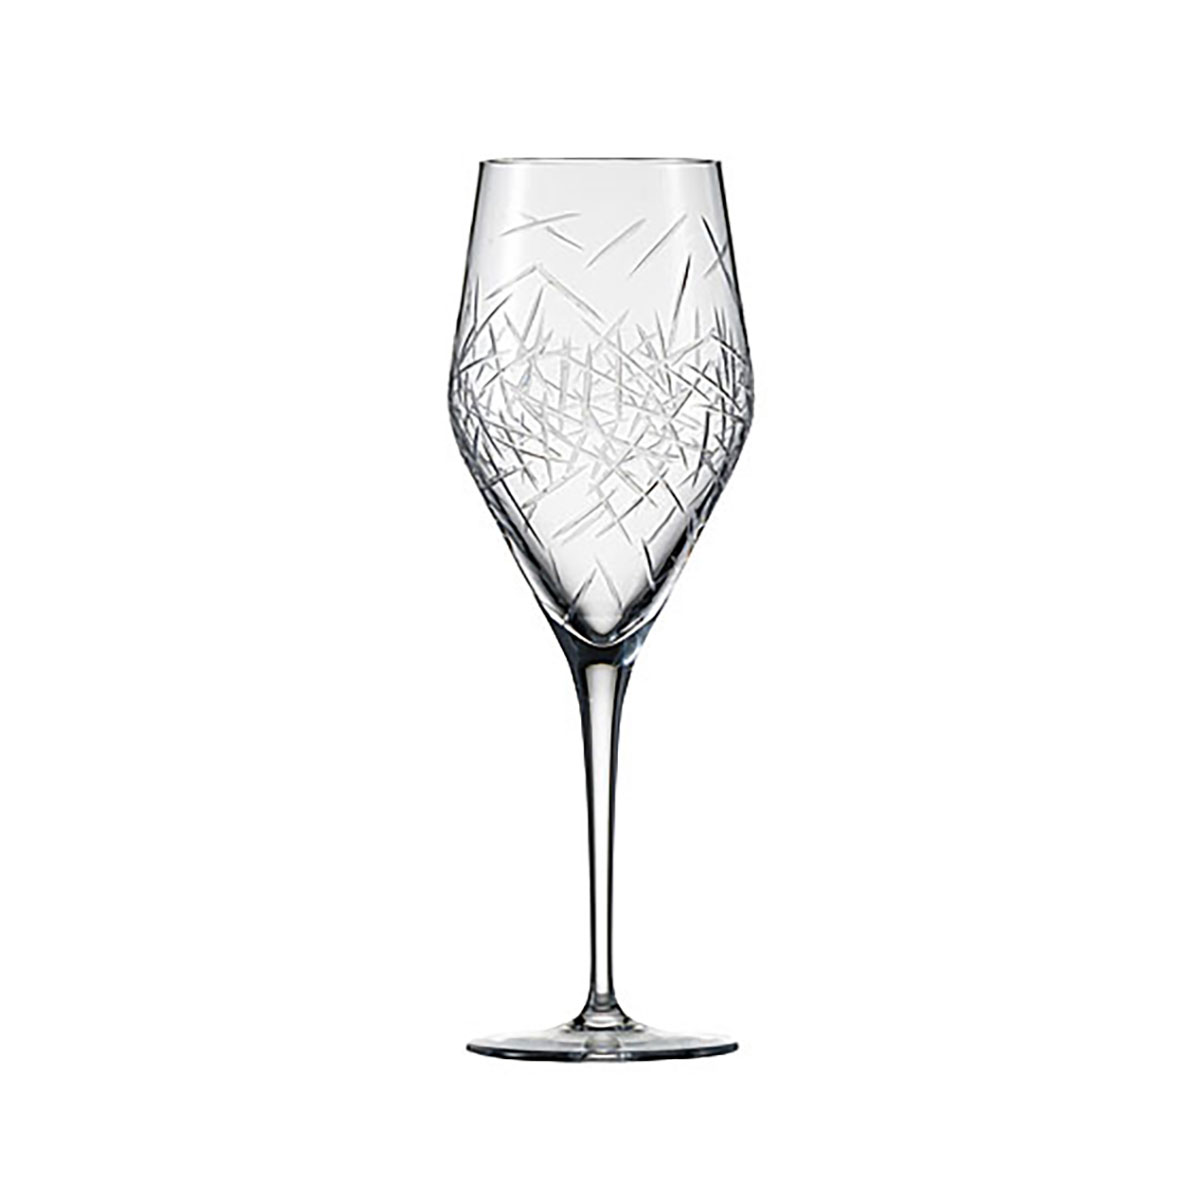 Schott Zwiesel Tritan Crystal, 1872 Charles Schumann Hommage Glace Allround Crystal Wine Glass, Pair